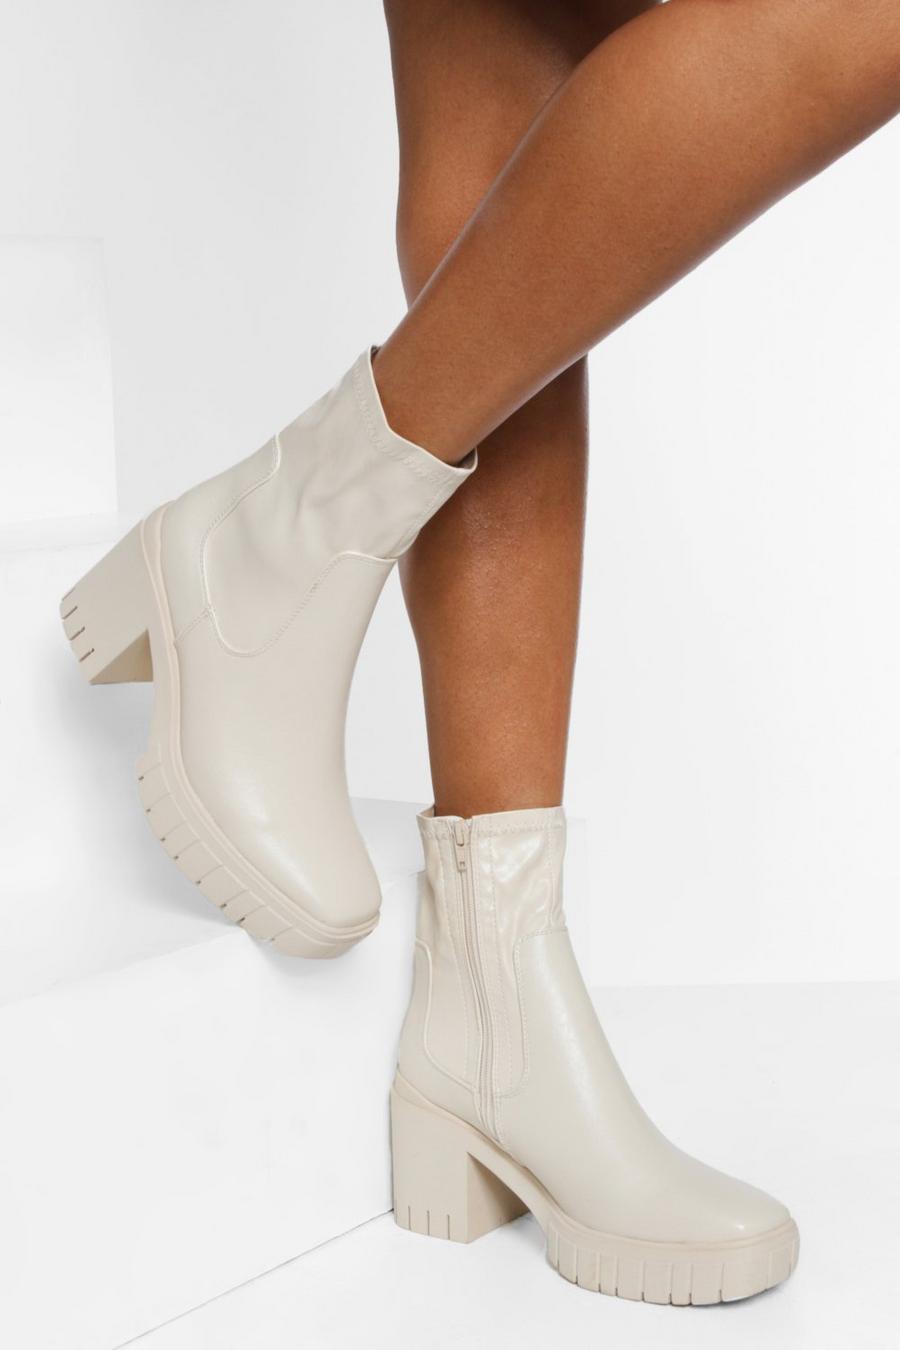 Klobige Socken-Stiefel, Cream white